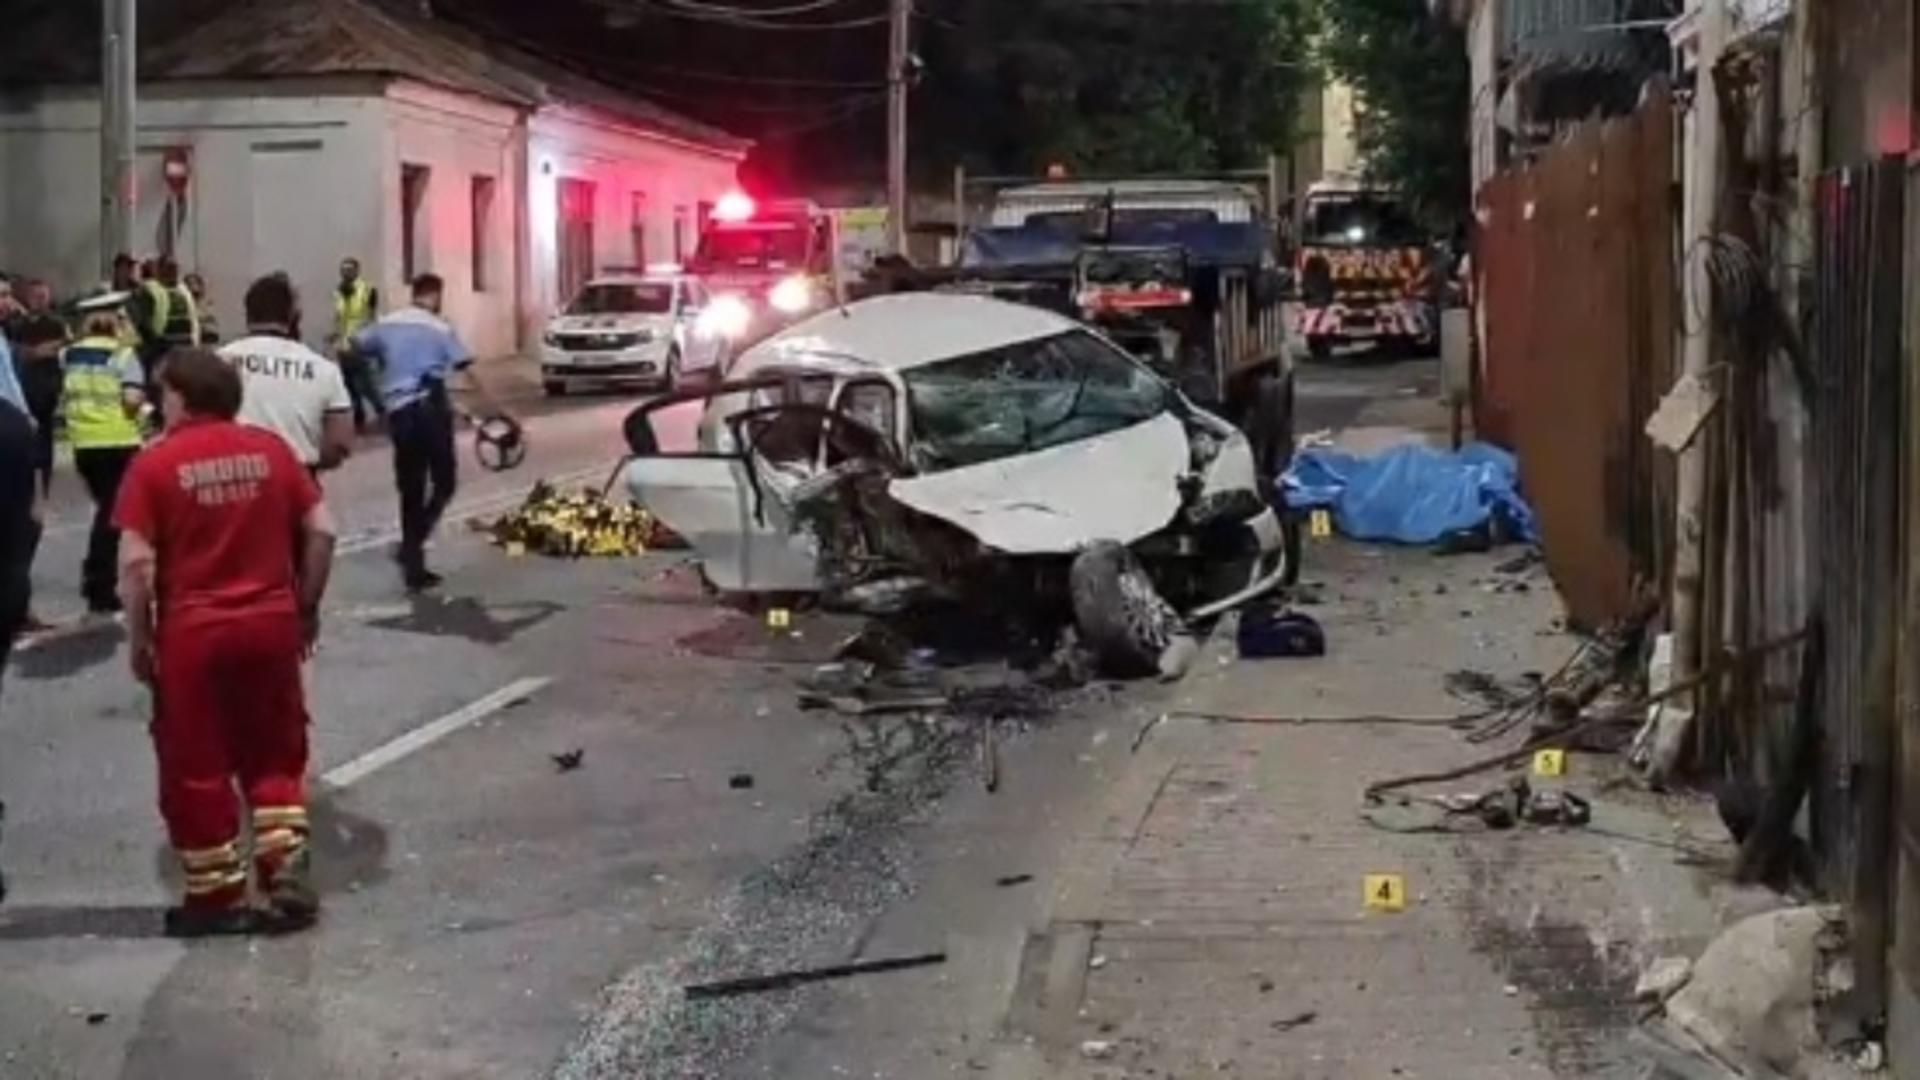 Şoferiţa din Iași care a ucis 4 muncitori avea 148 km/h la intrarea în curbă